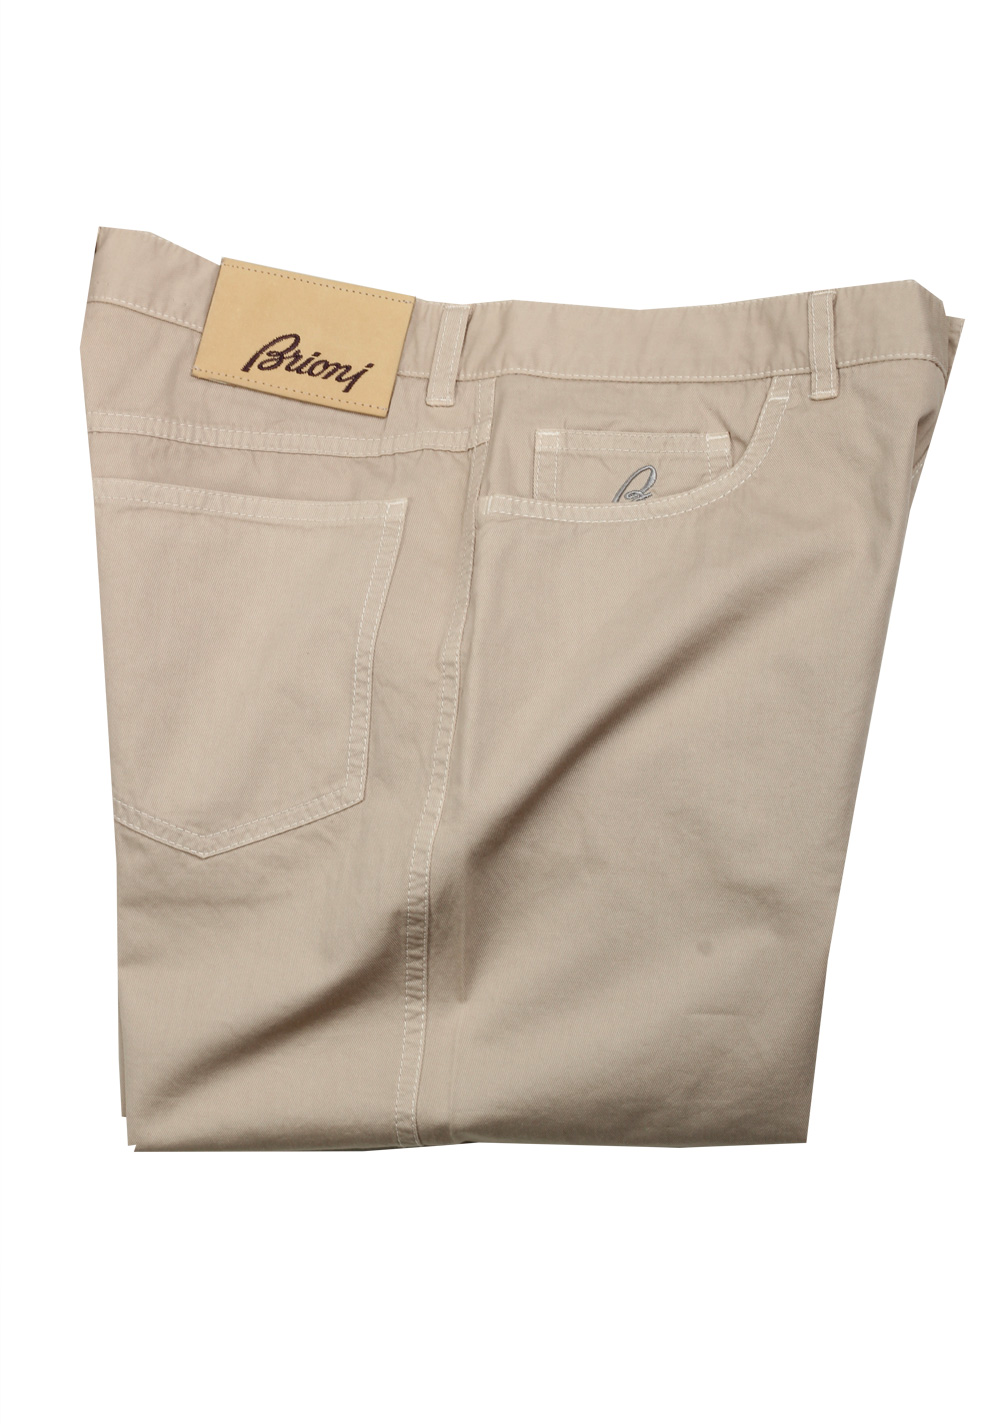 Brioni Beige Jeans Trousers Size 46 / 30 U.S. | Costume Limité